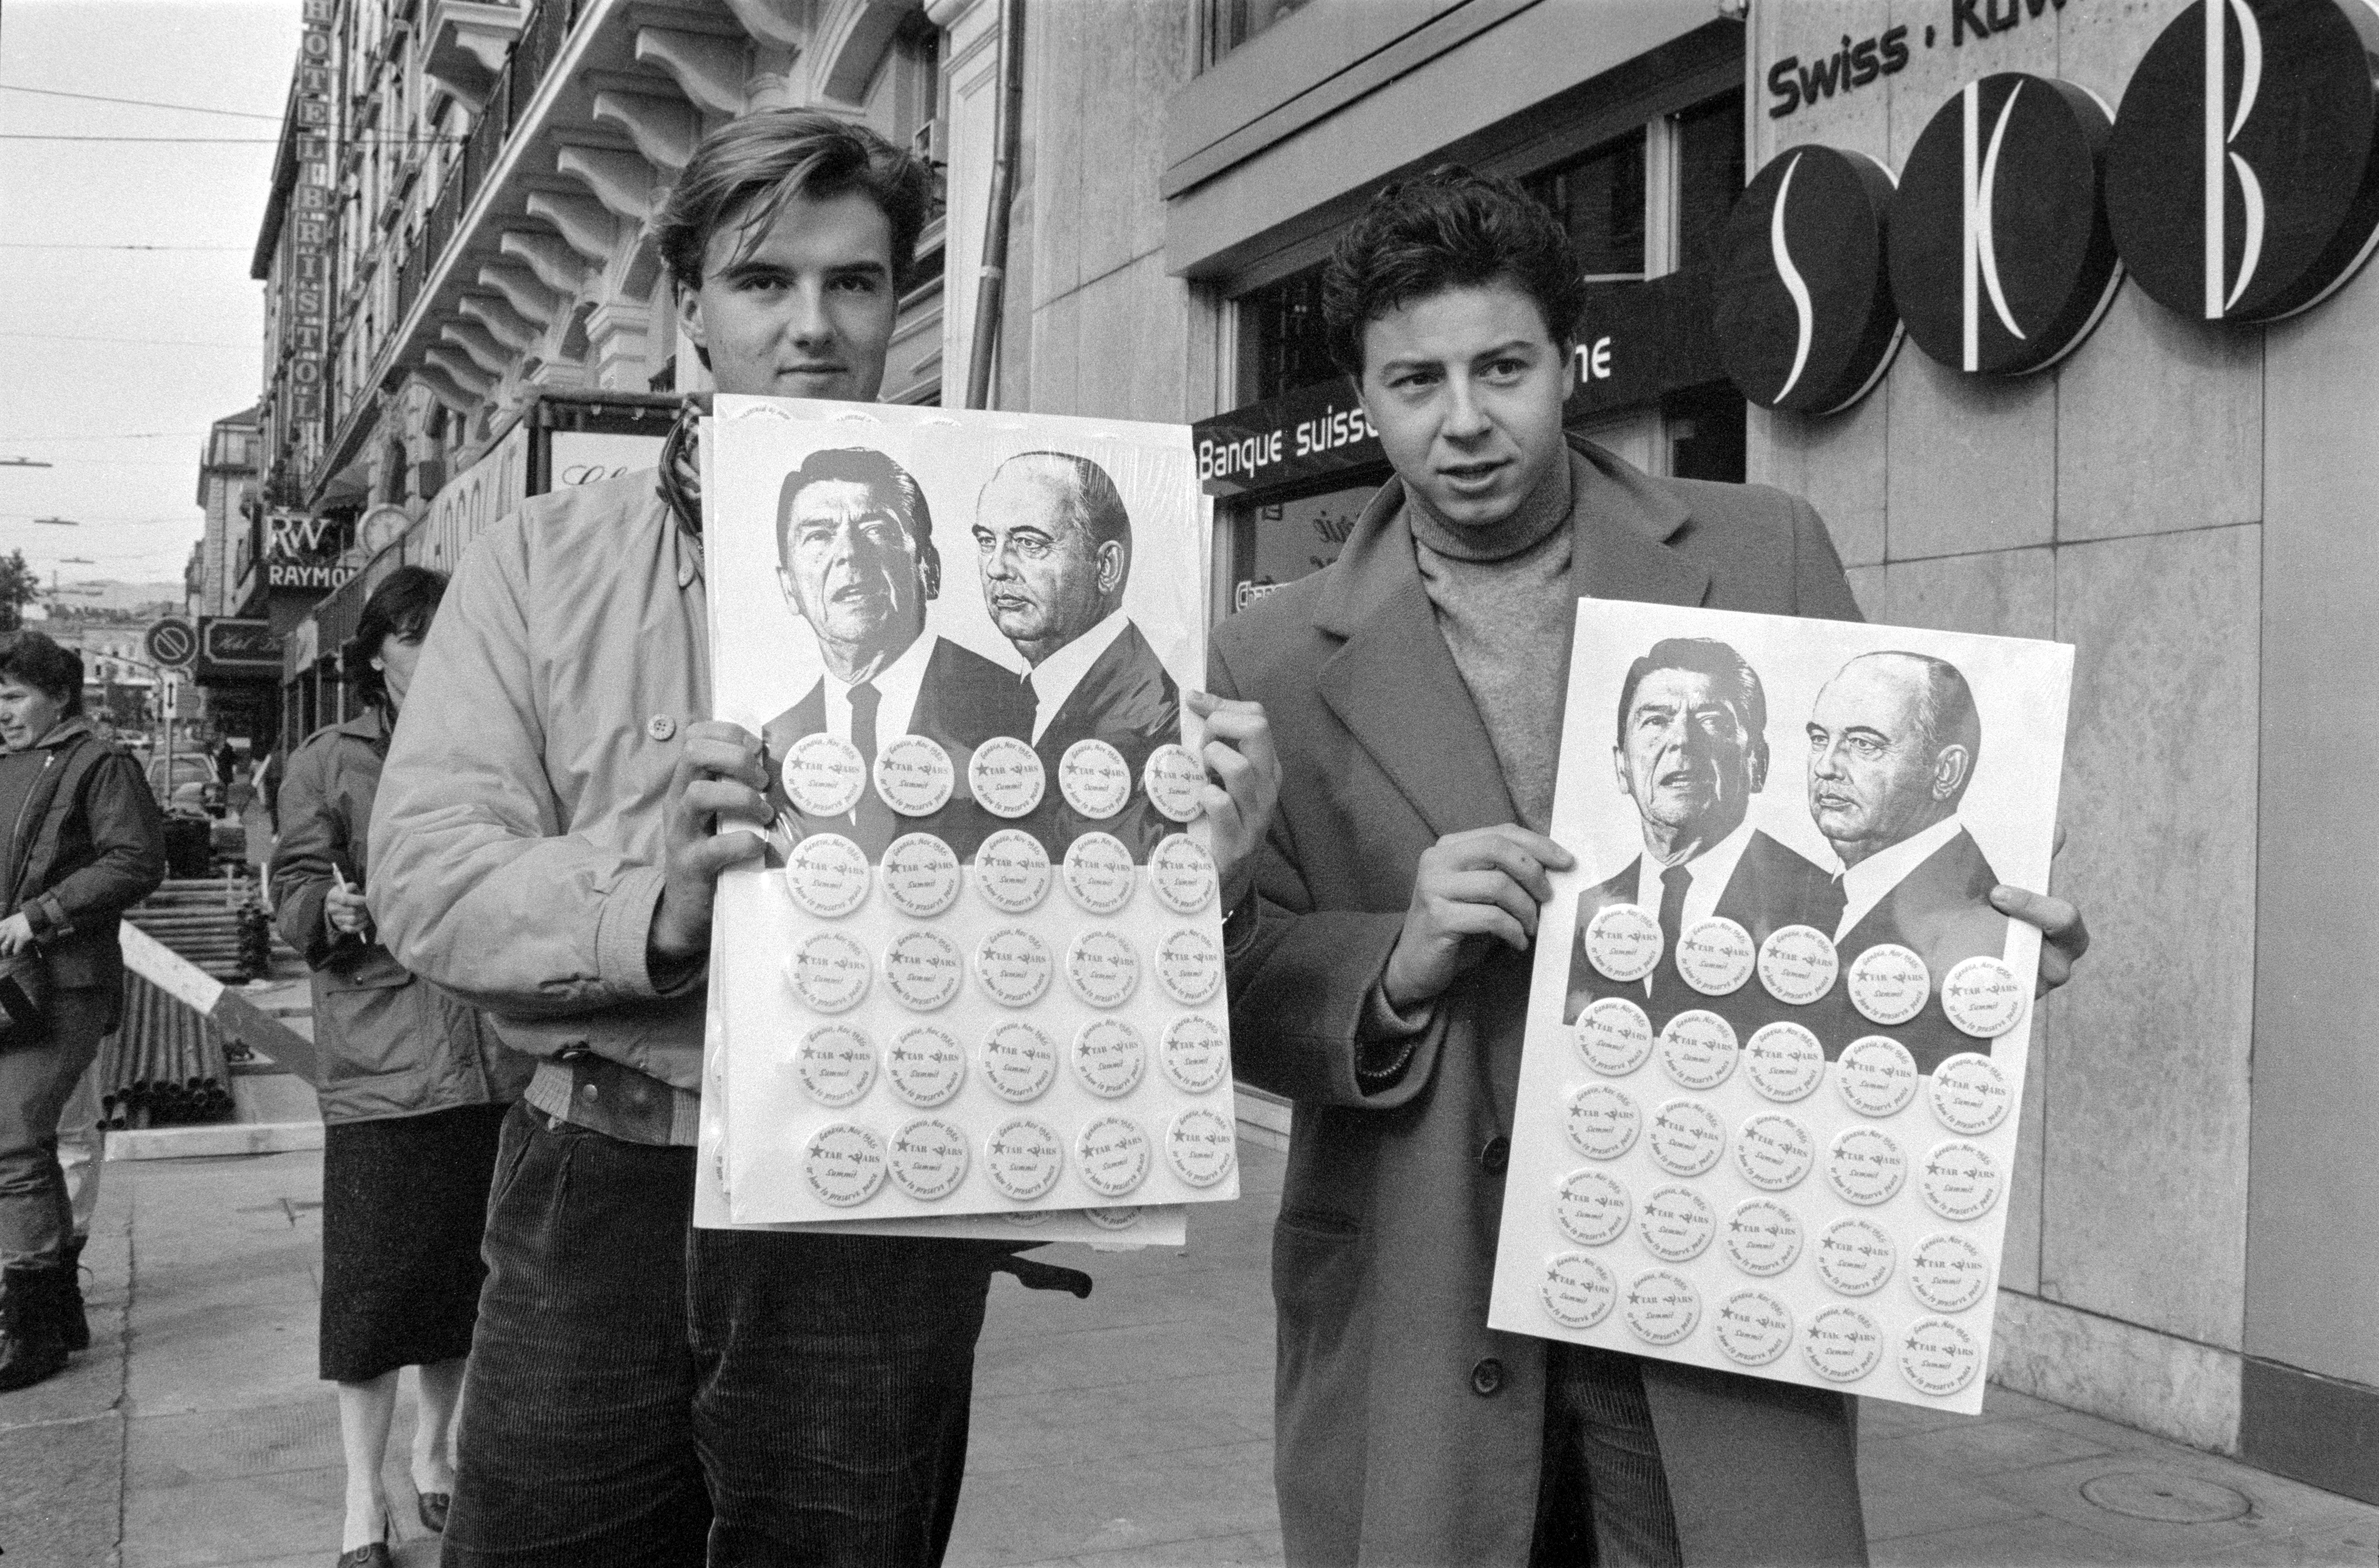 Des vendeurs de badges souvenirs avant le sommet de Genève, le 12 novembre 1985.